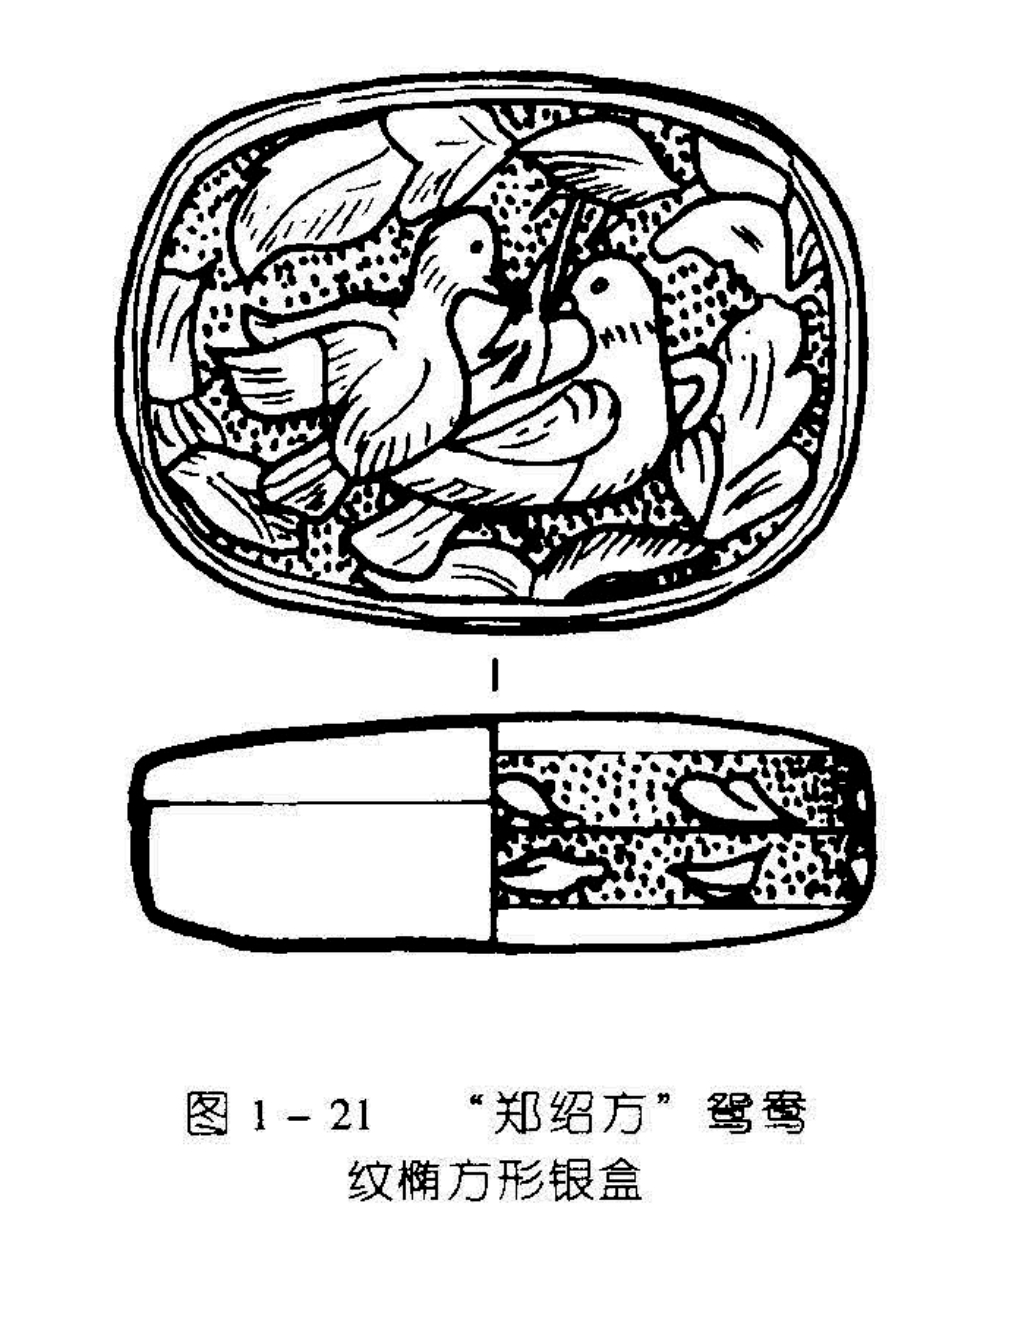 图 1 - 21 “郑绍方”鸳鸯纹椭方形银盒